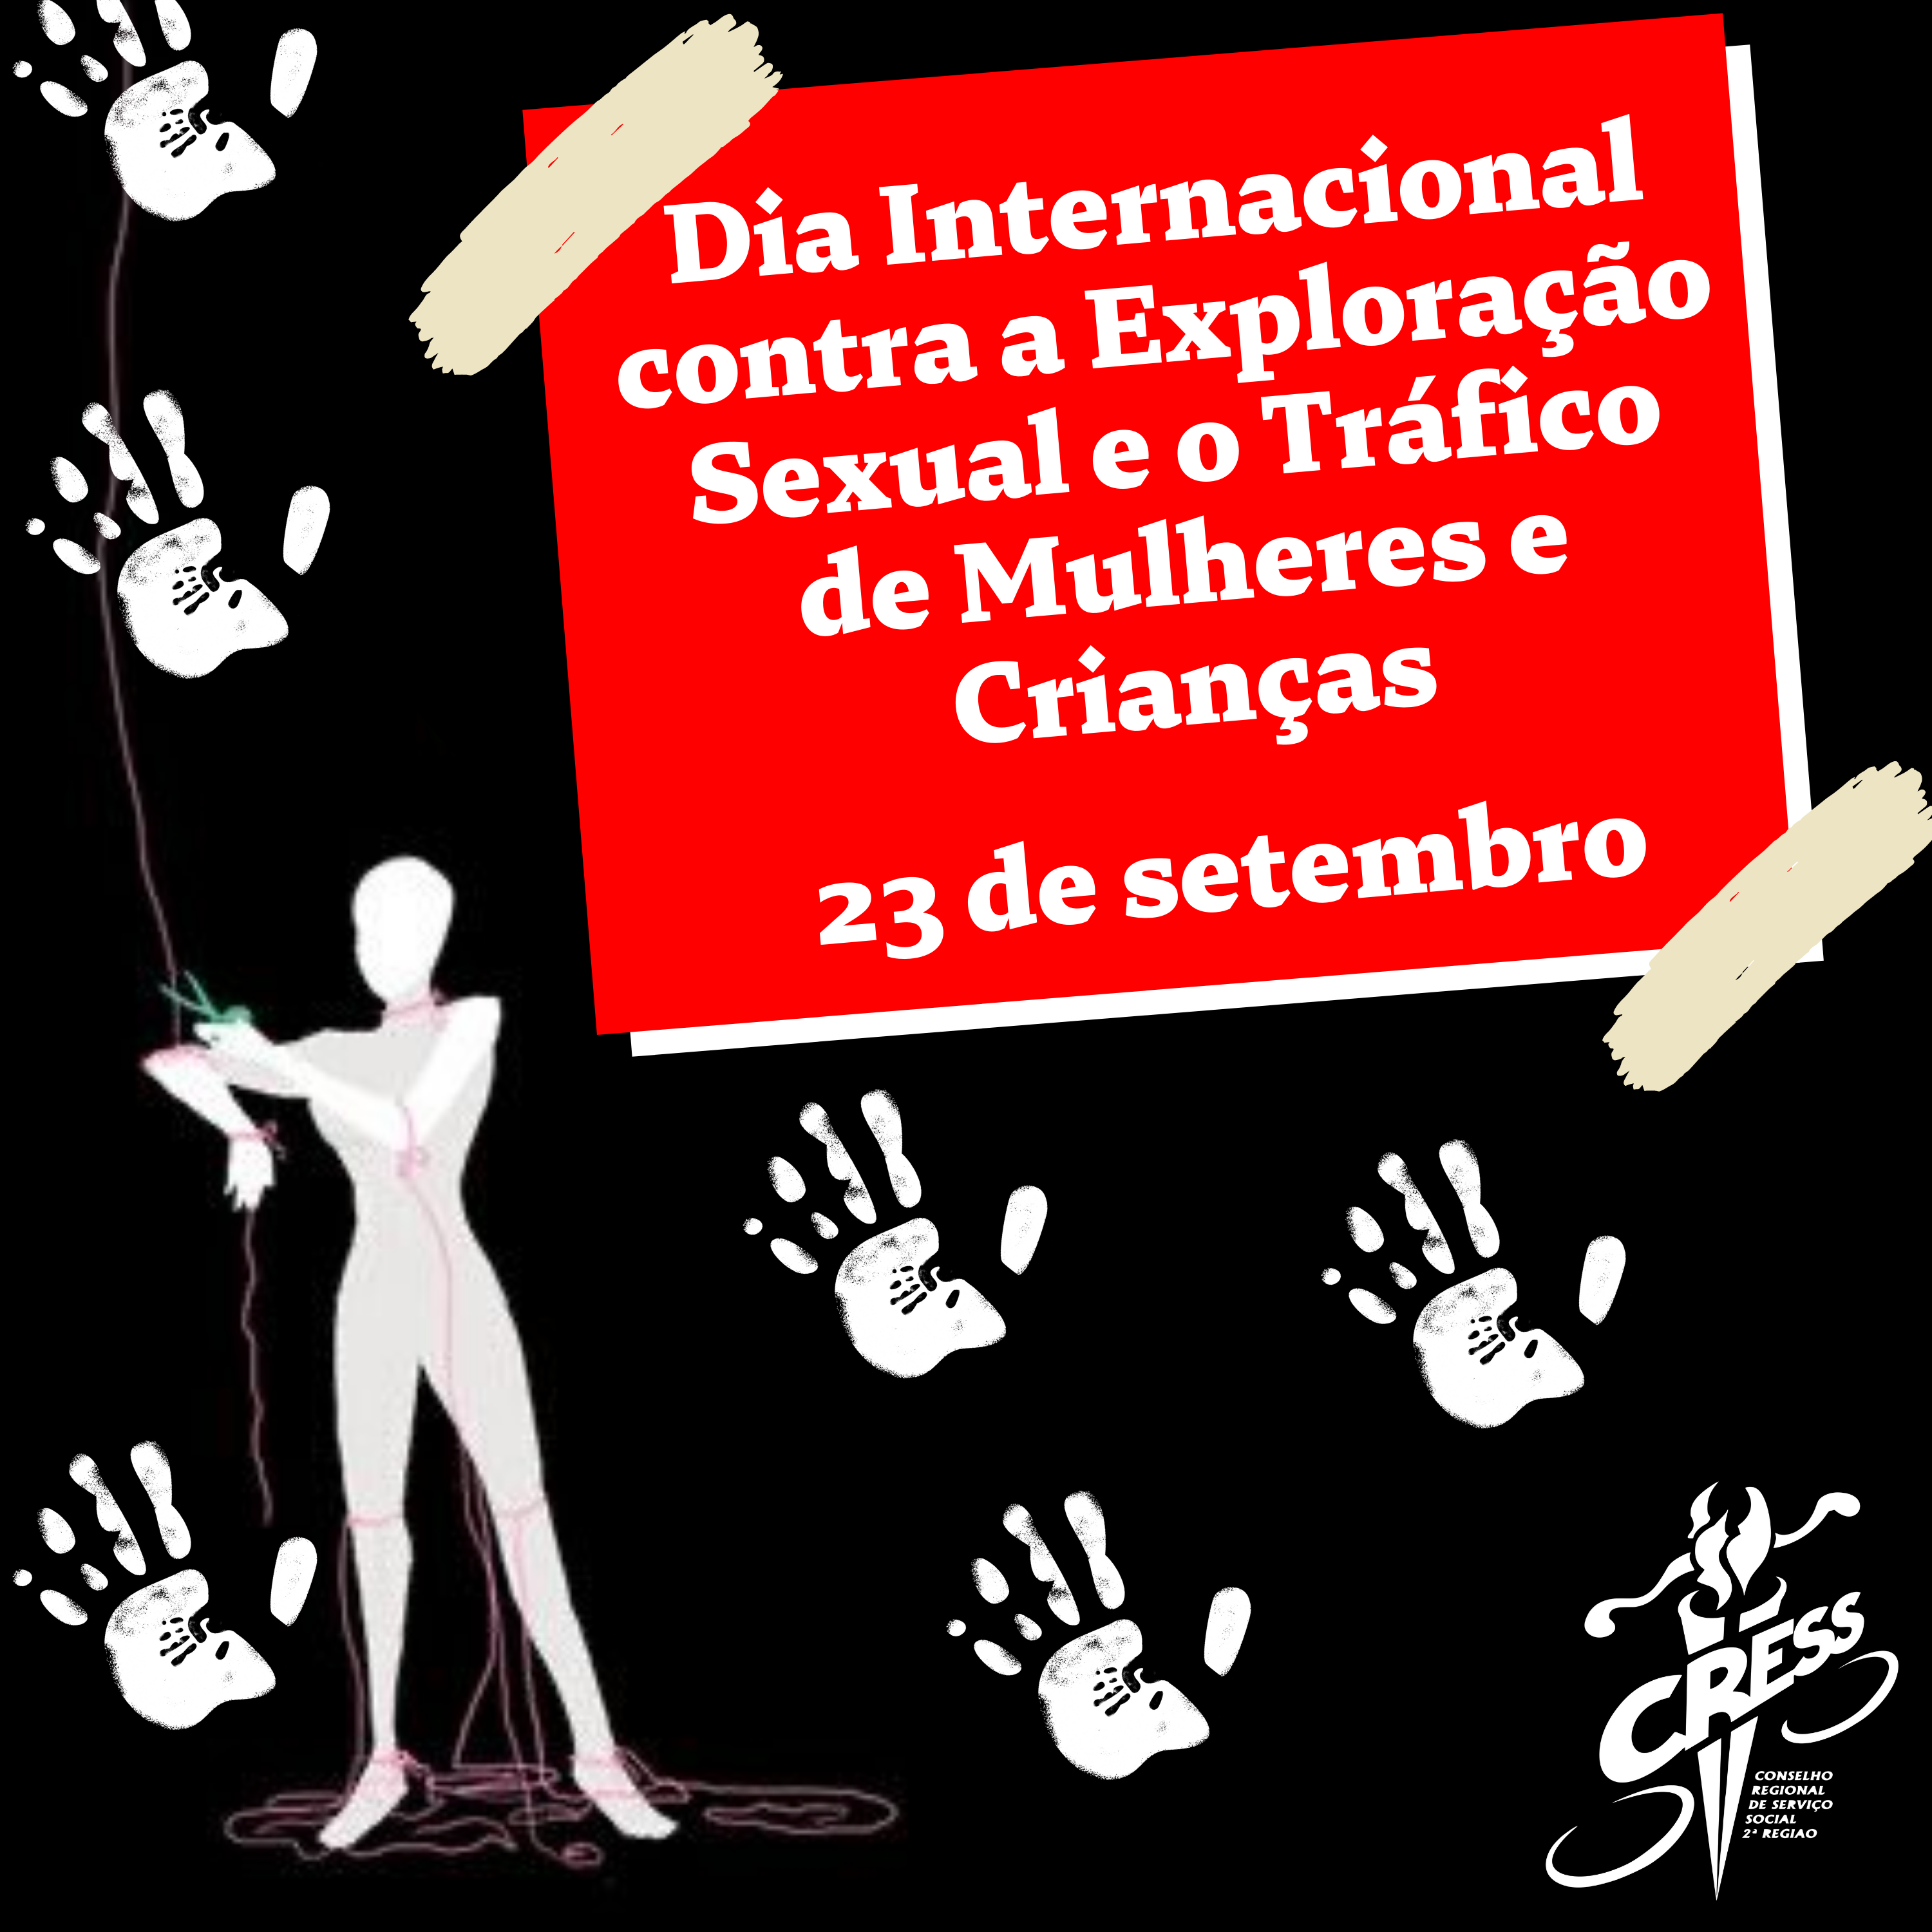 Dia Internacional contra a Exploração Sexual e o Tráfico de Mulheres e Crianças – 23 de setembro (2)